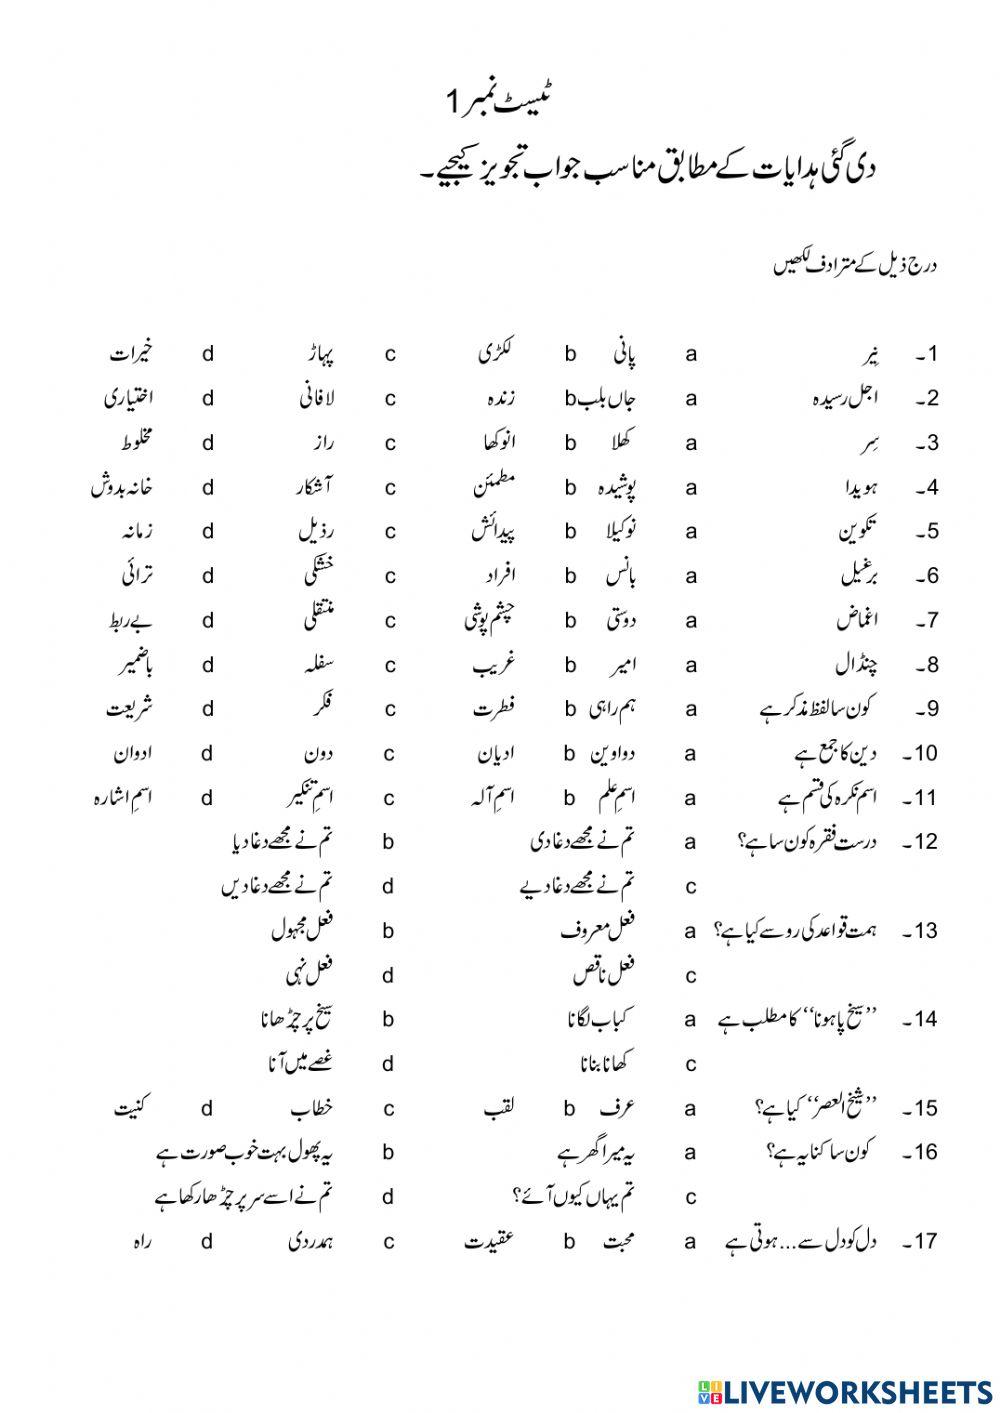 Urdu Grammar MCQs